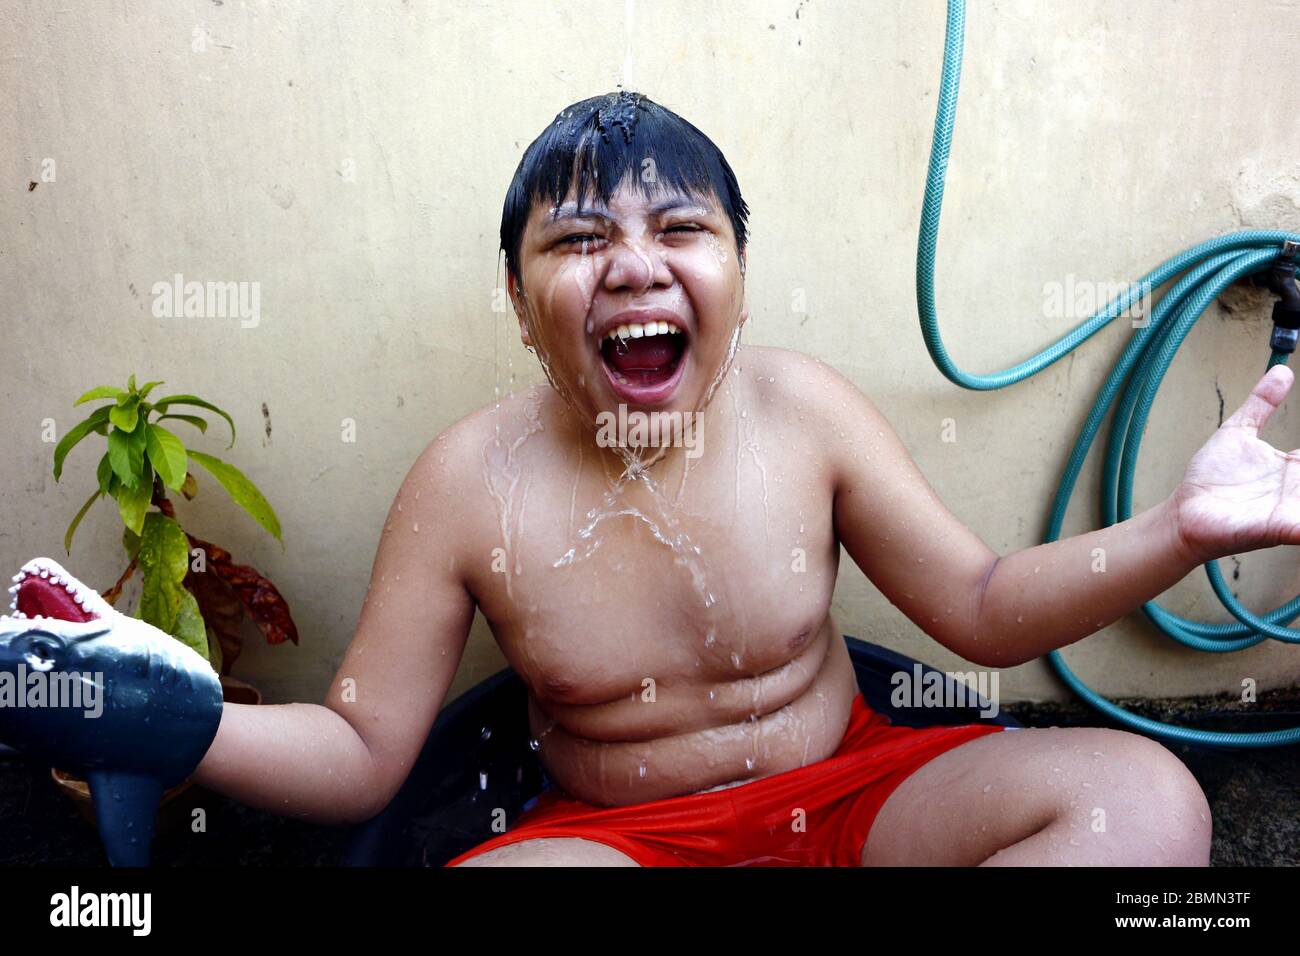 Foto eines jungen asiatischen Jungen Abkühlung in einem Wasserbecken und  einem Wasserschlauch als provisorische Dusche, um die Sommerhitze zu  schlagen Stockfotografie - Alamy